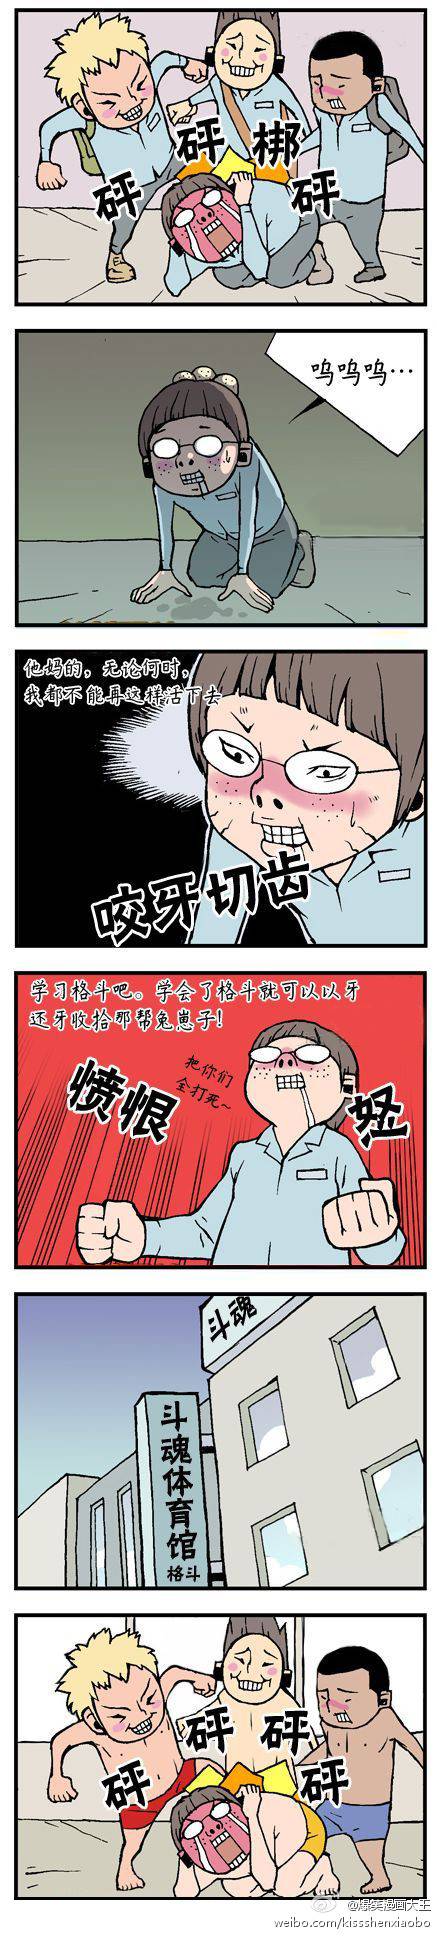 邪恶漫画爆笑囧图第49刊：答应